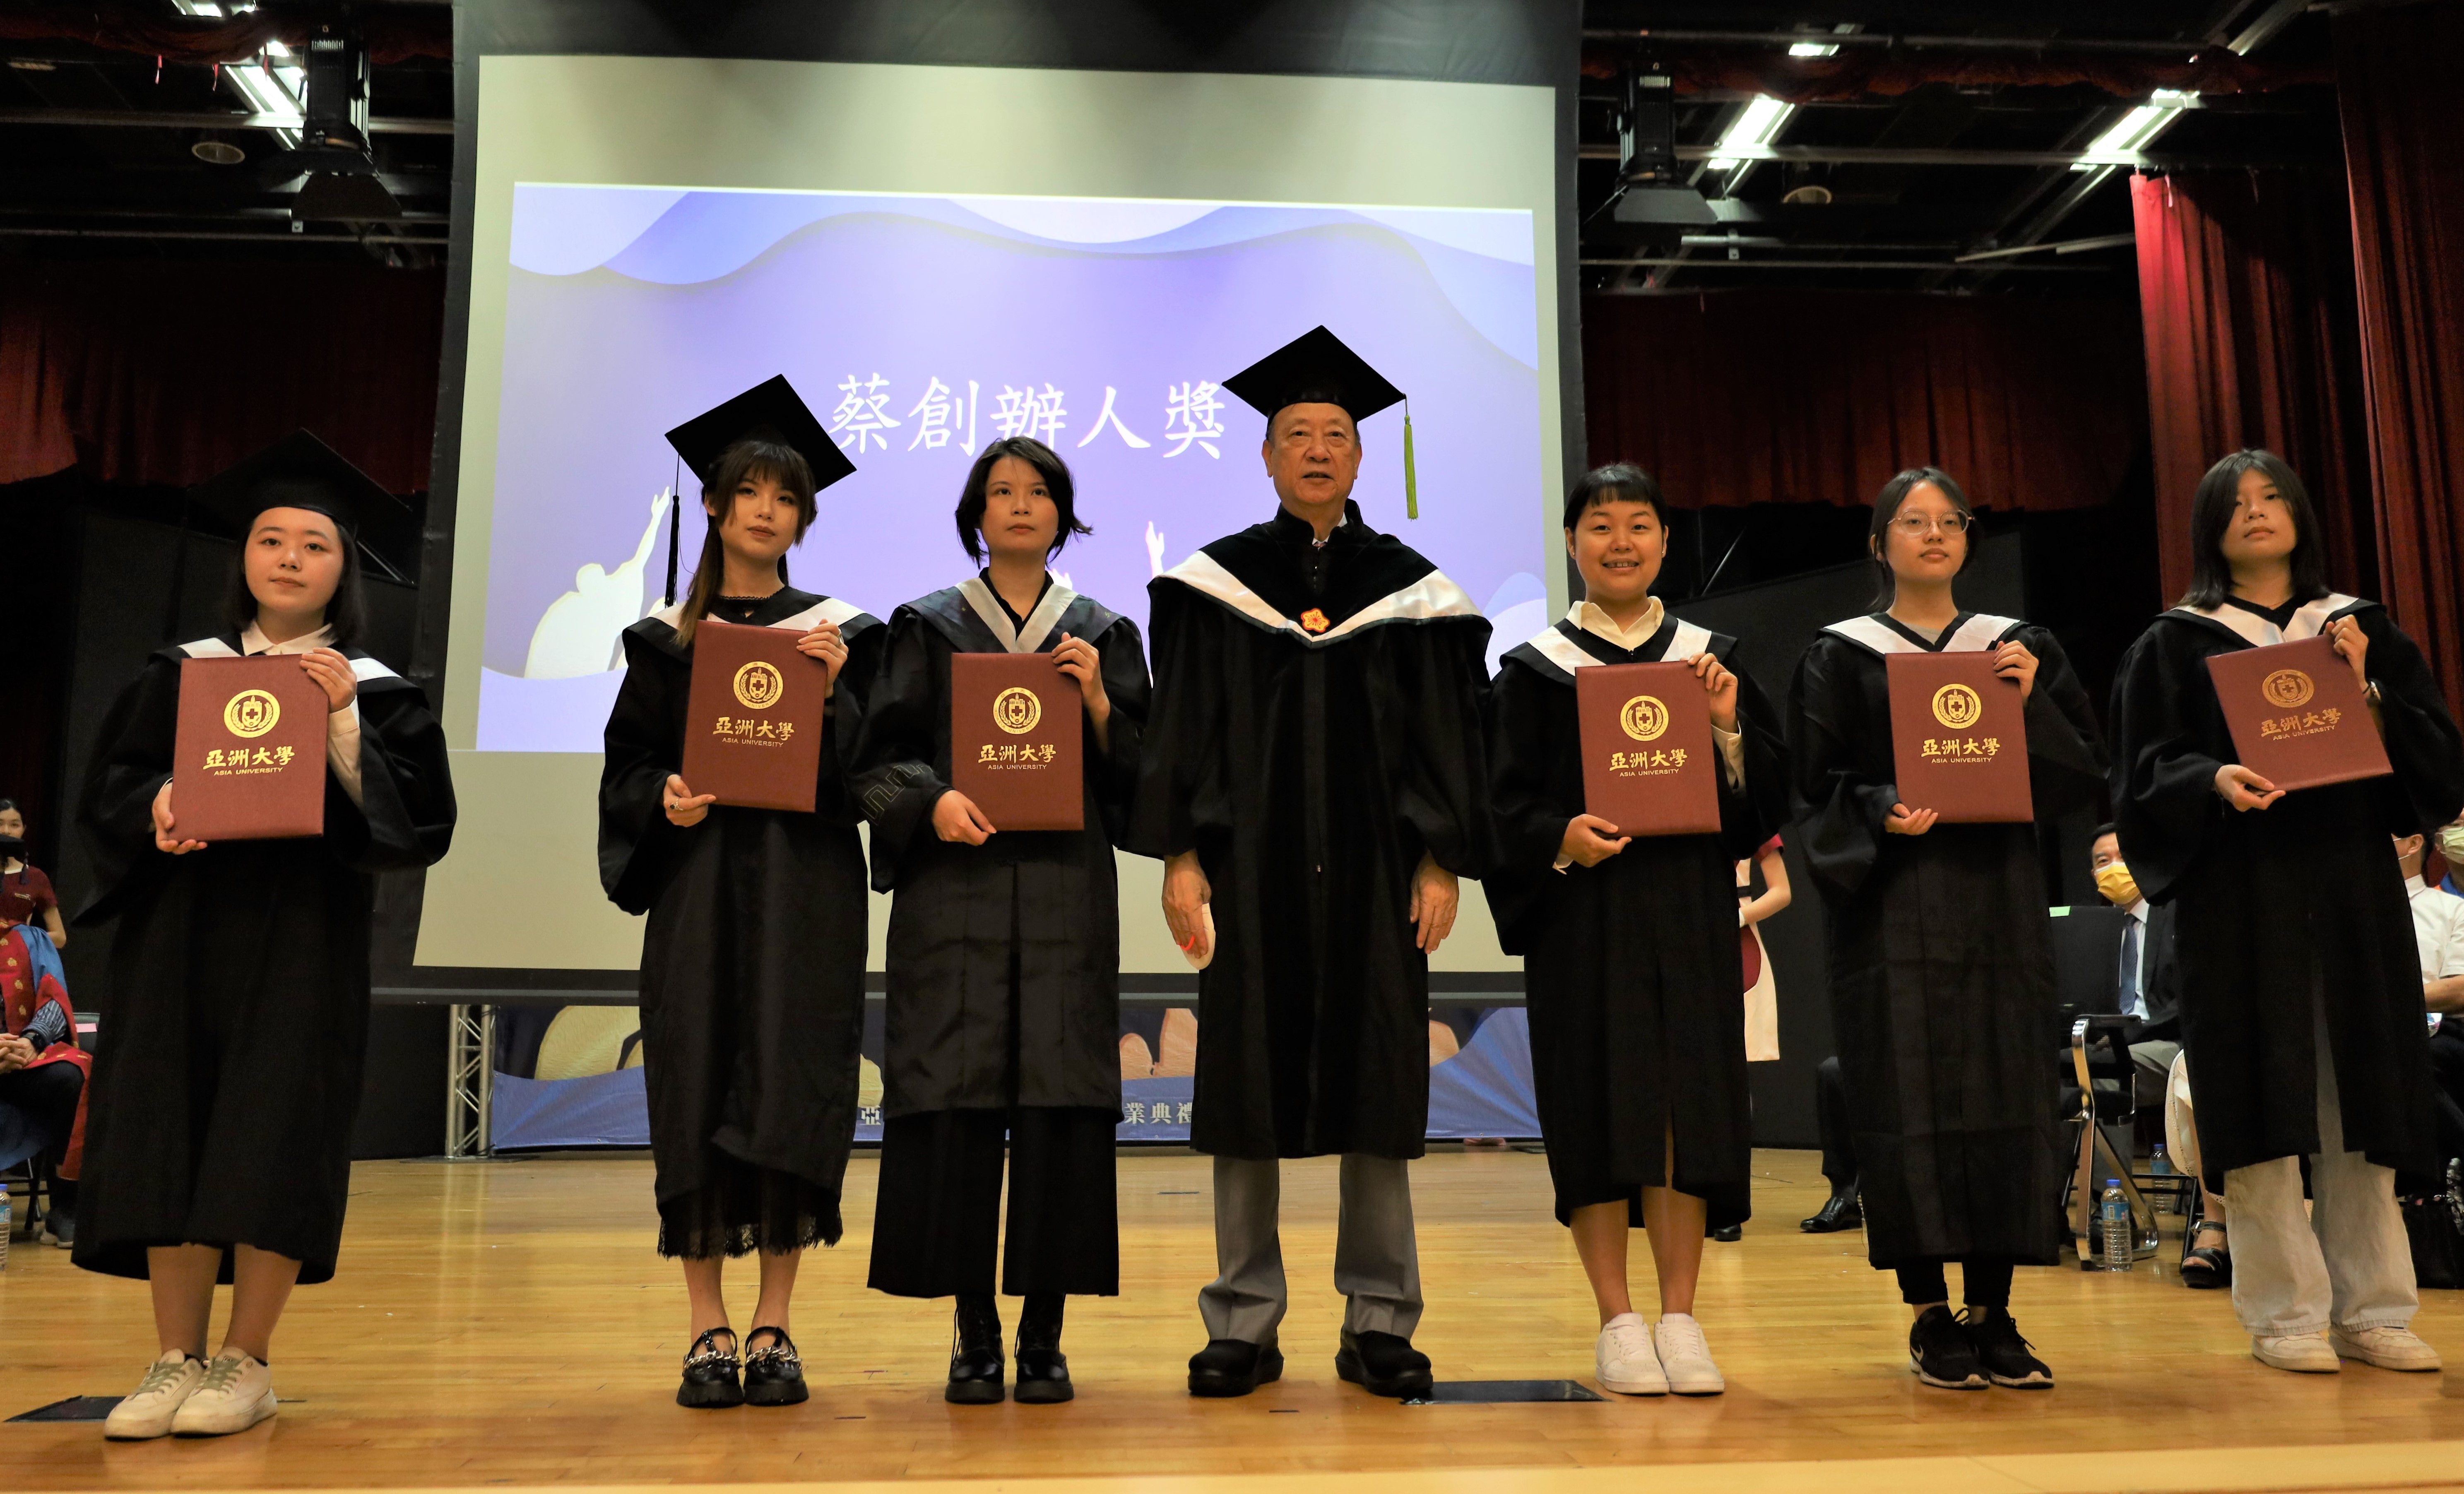 圖為亞大畢業典禮，創辦人蔡長海(中)頒獎給得獎畢業生。